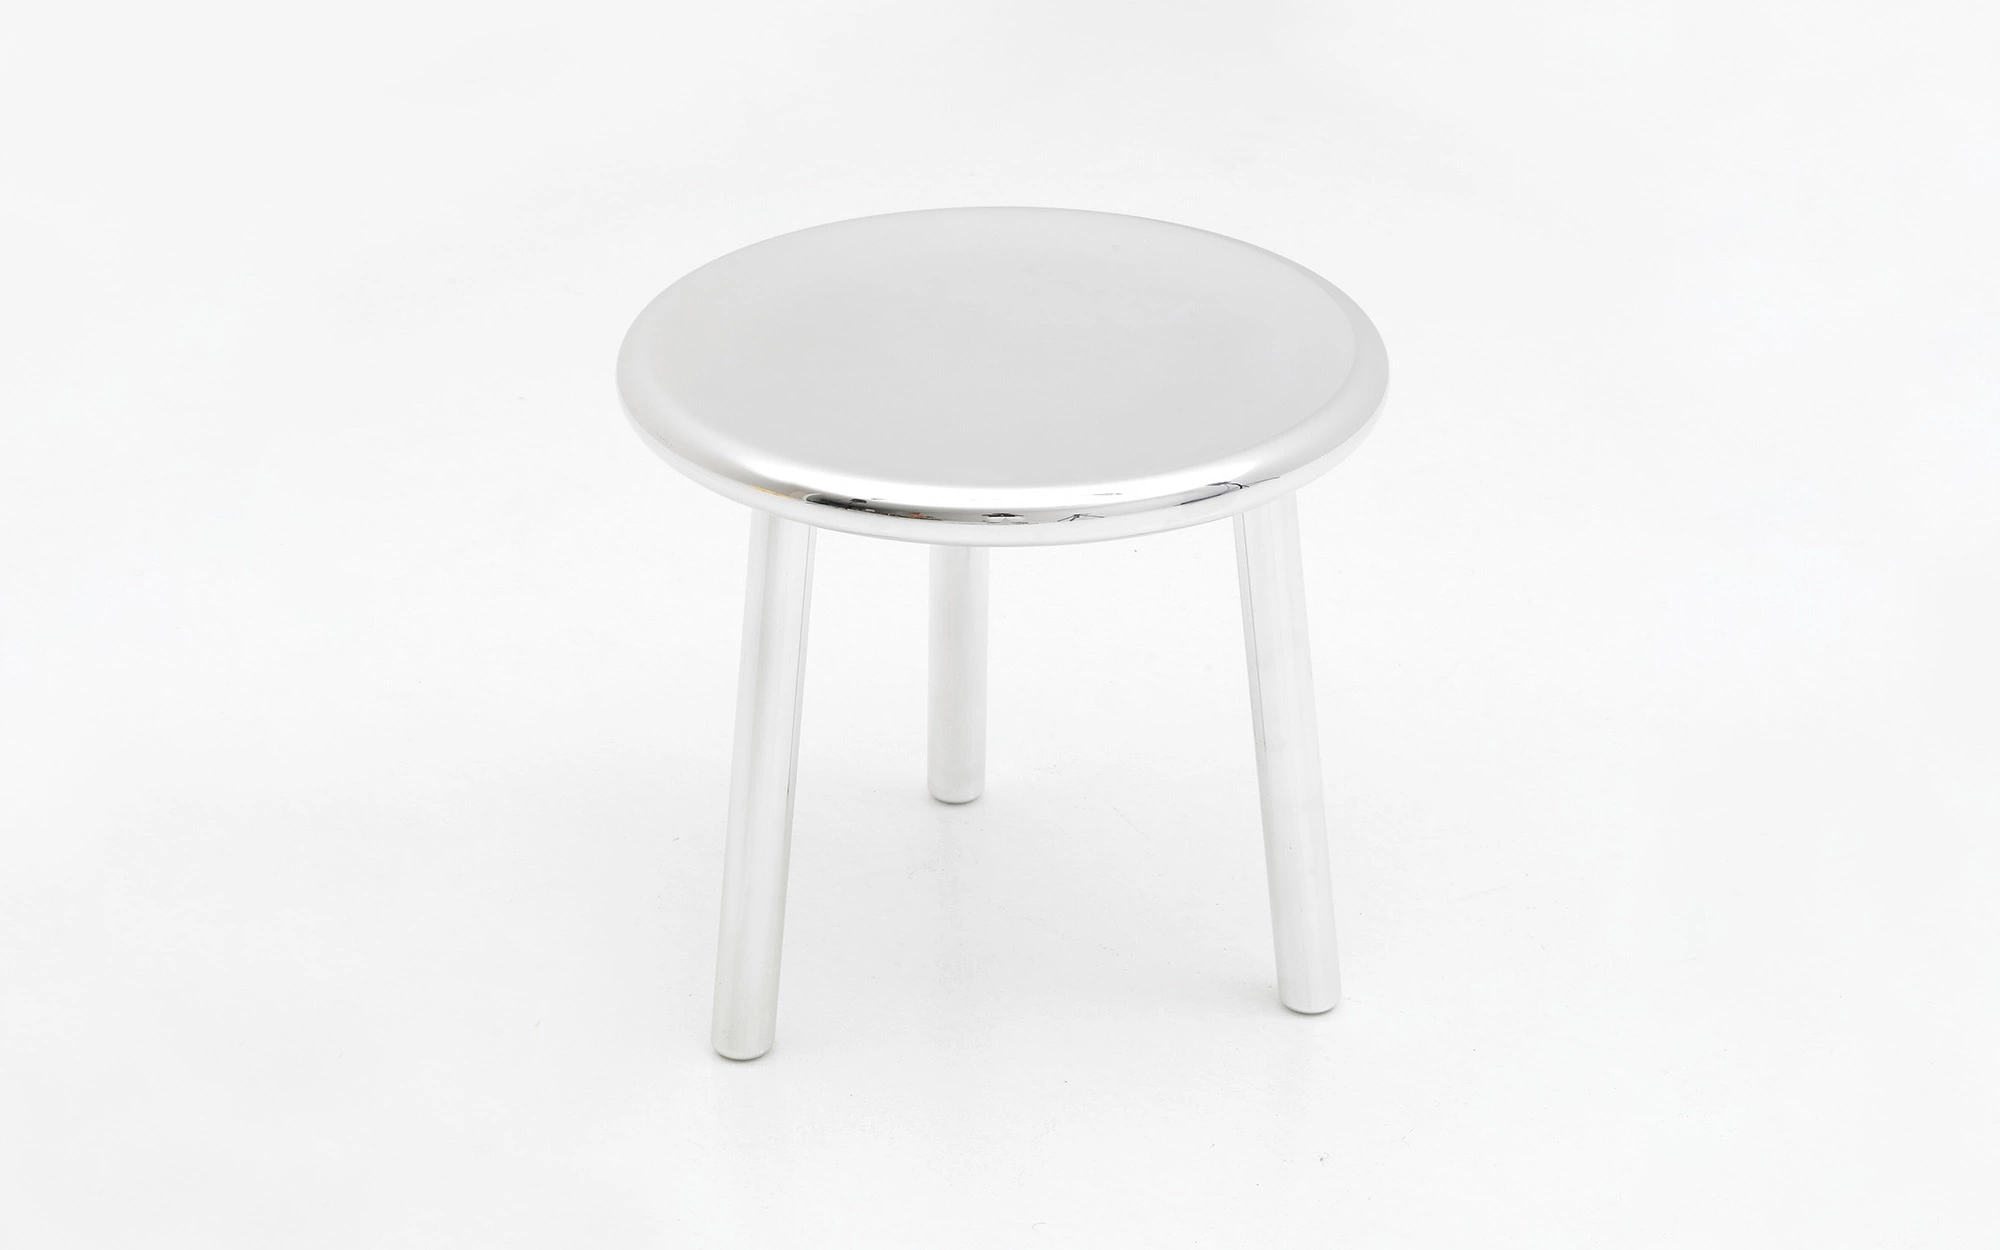 3-legged stool - Jasper Morrison - Vase - Galerie kreo